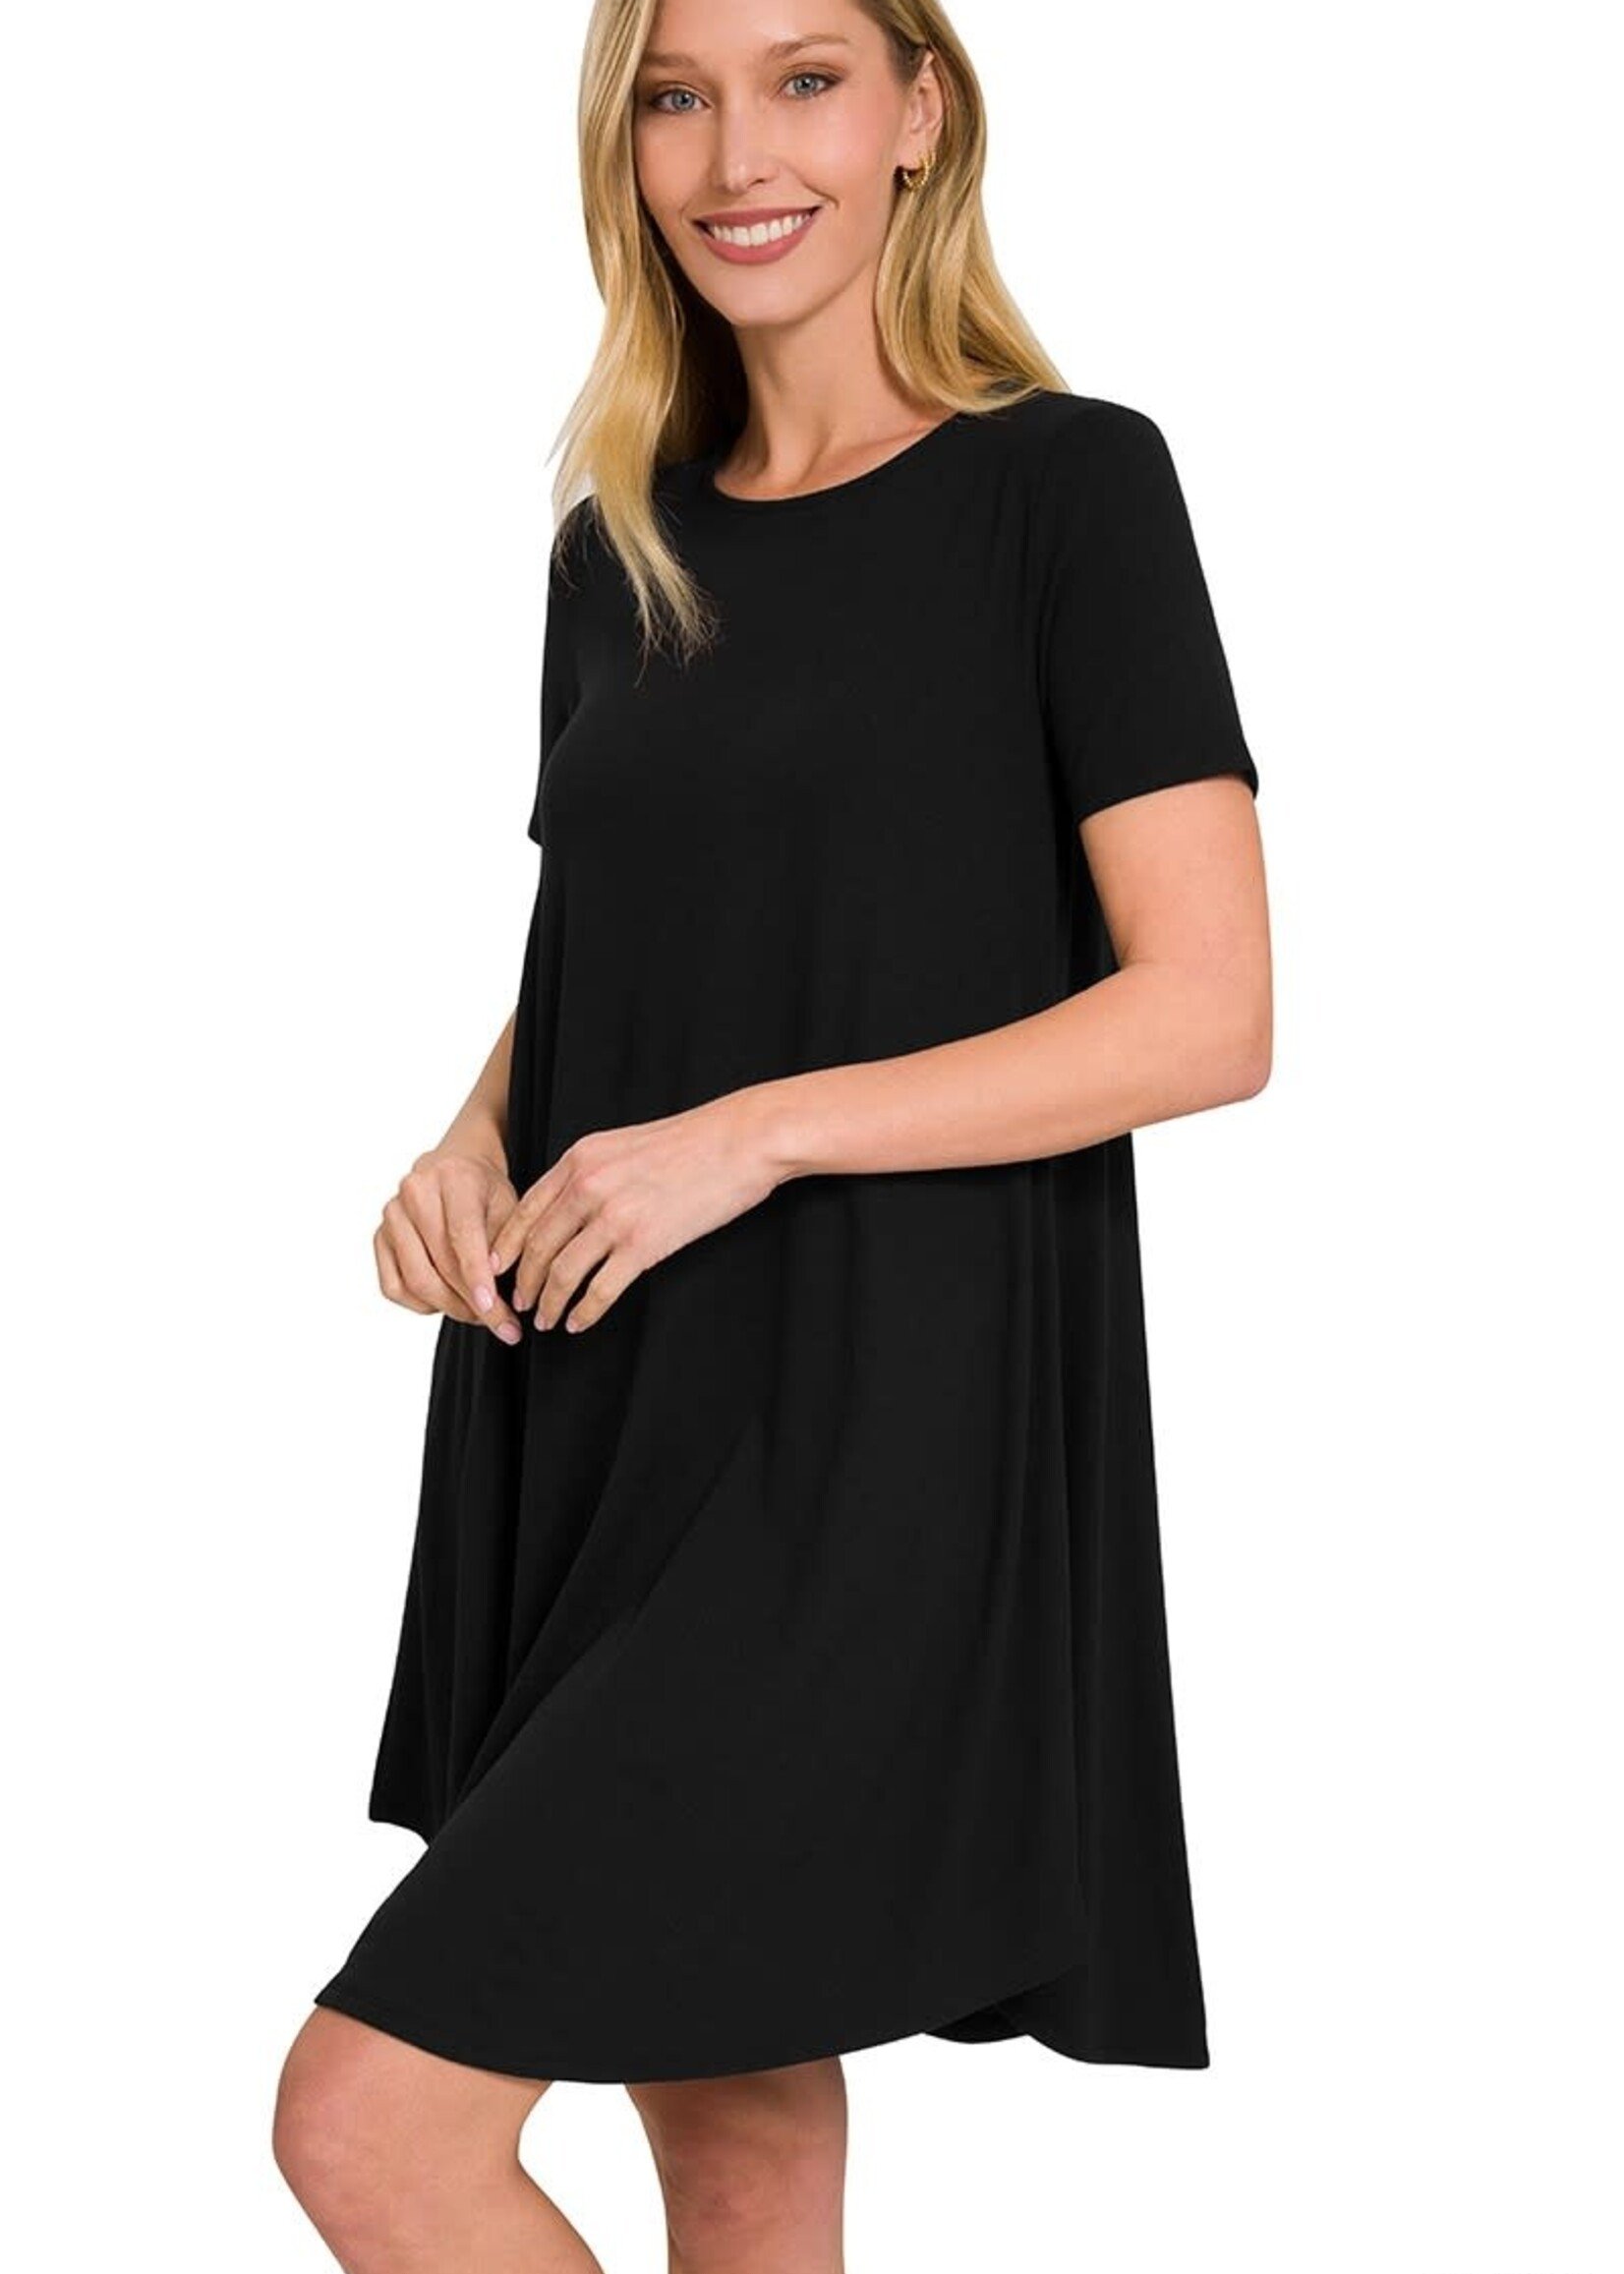 Basic Jane T-Shirt Dress - Black